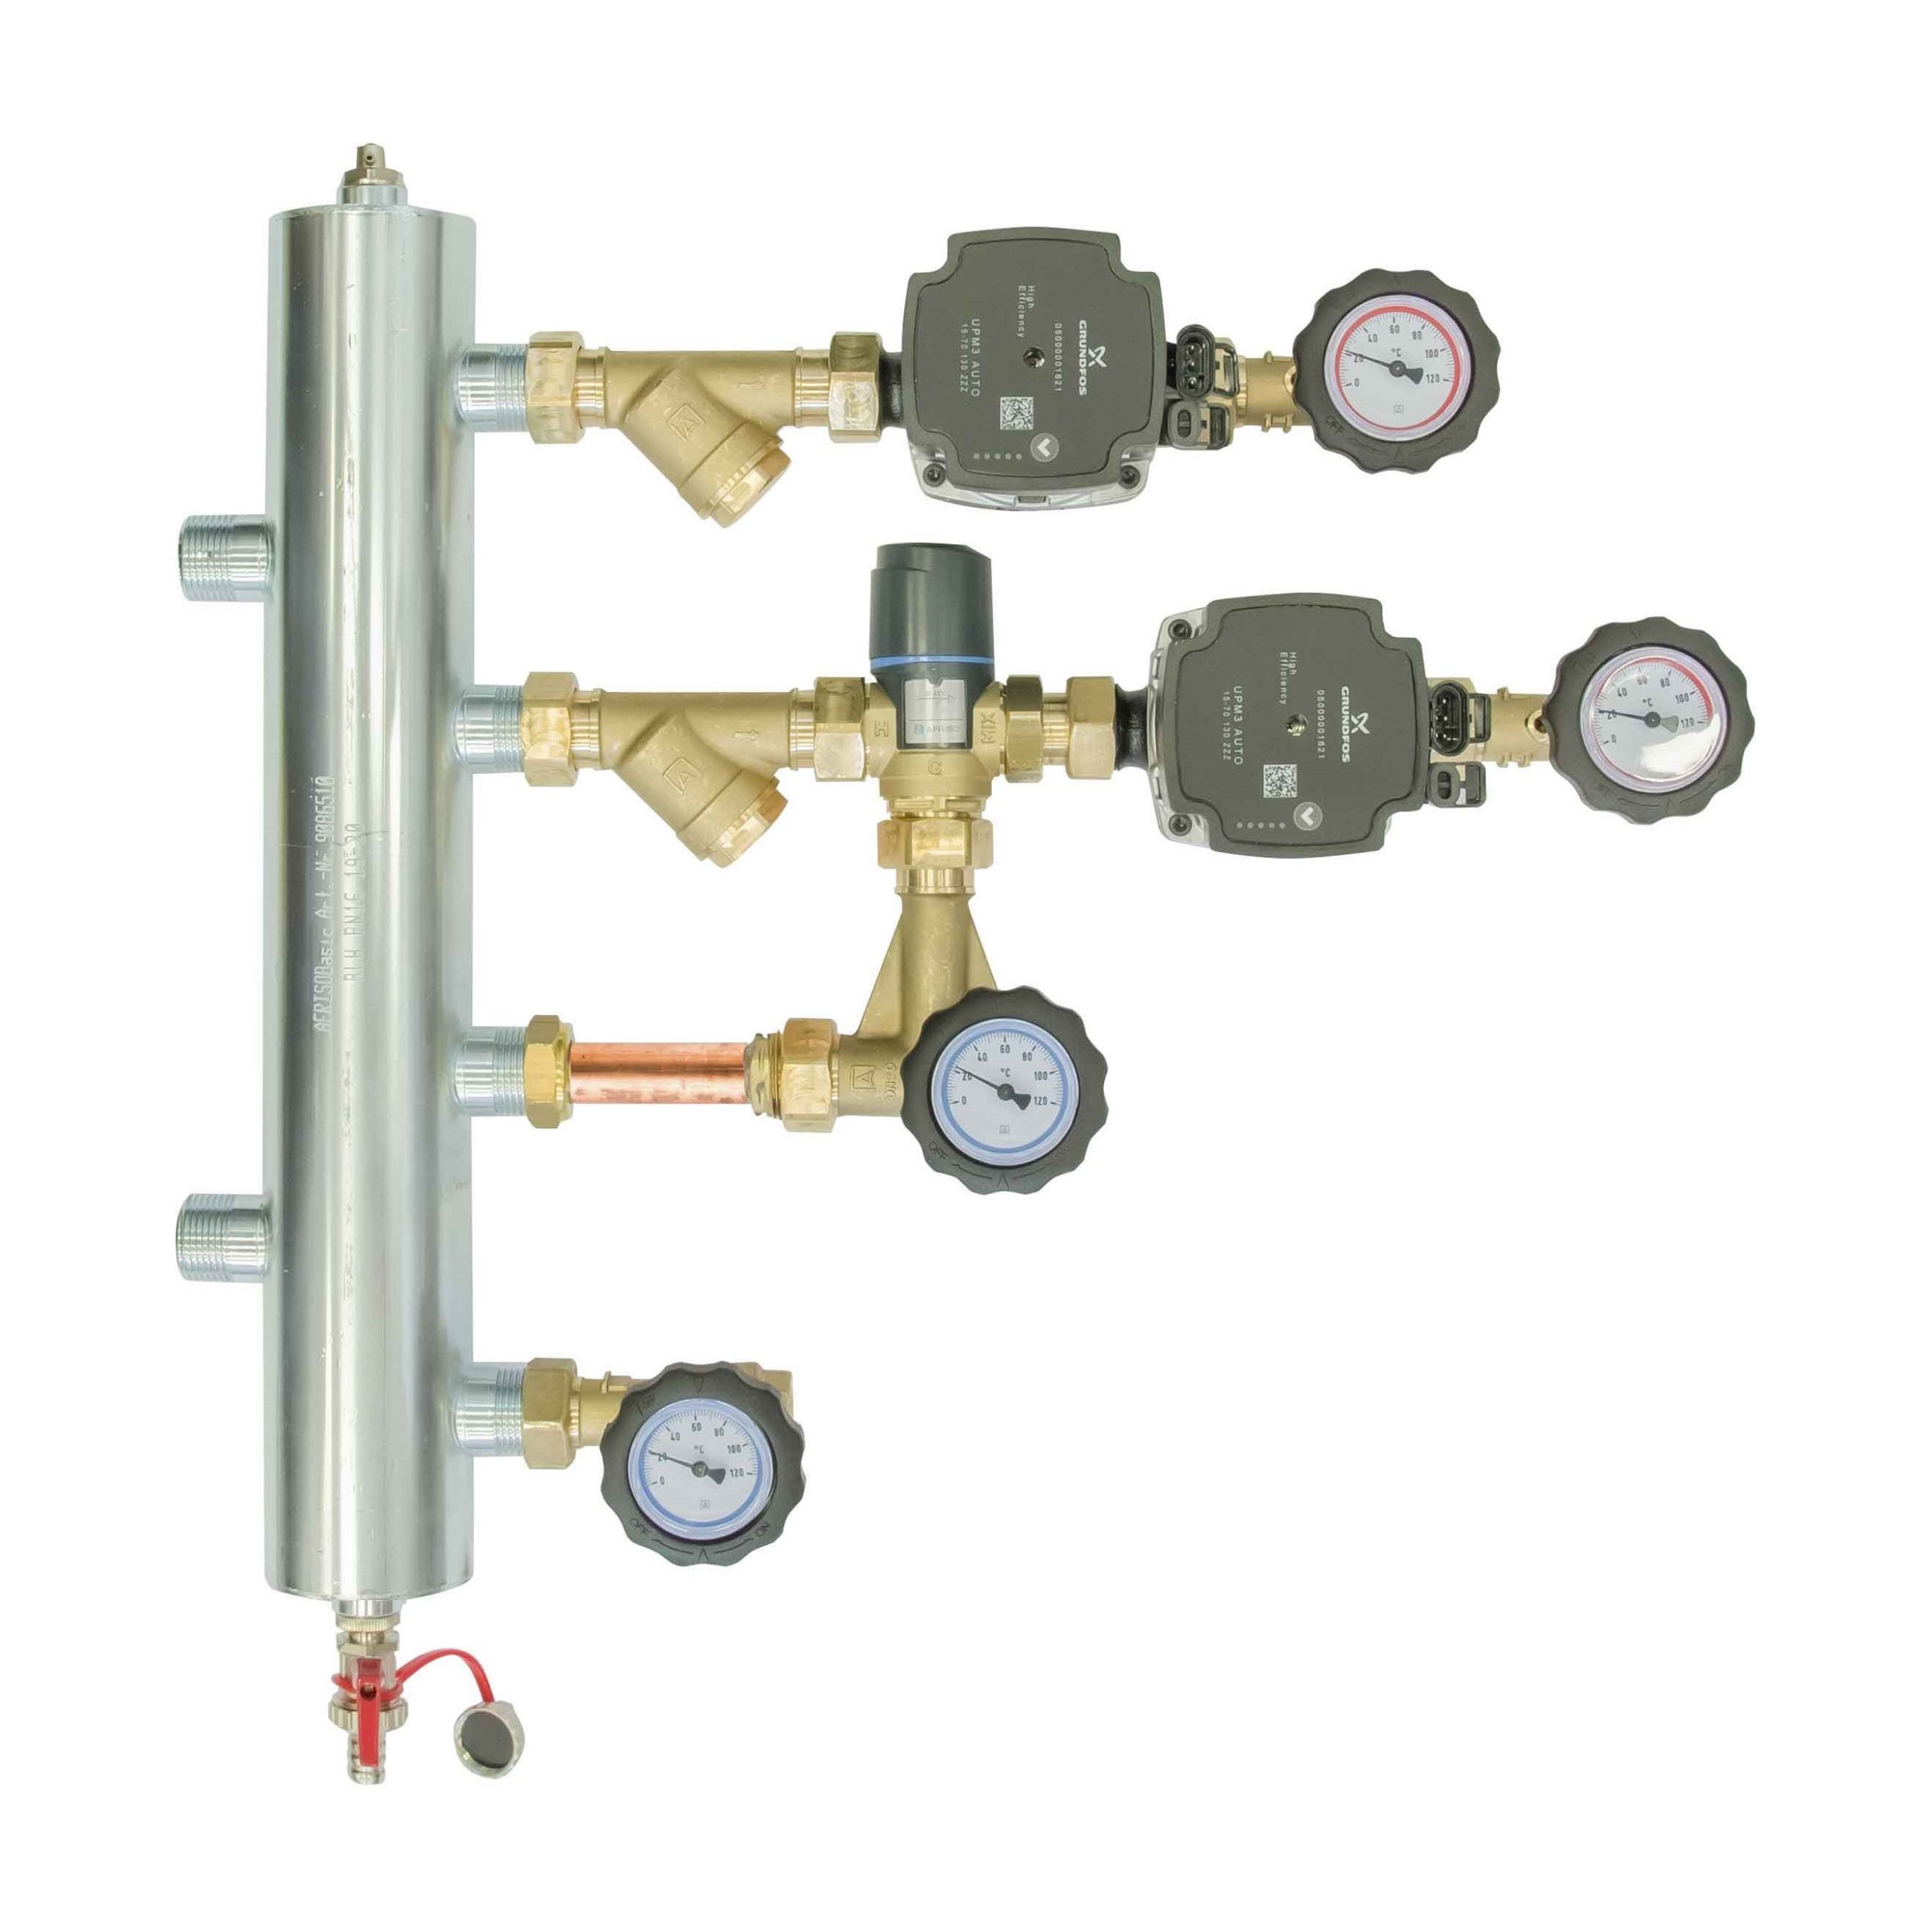 Hydraulická sestava BPS 901, s termostatickým ventilem ATM 561, čerpadla Grundfos UPM3 - AFRISO.CZ